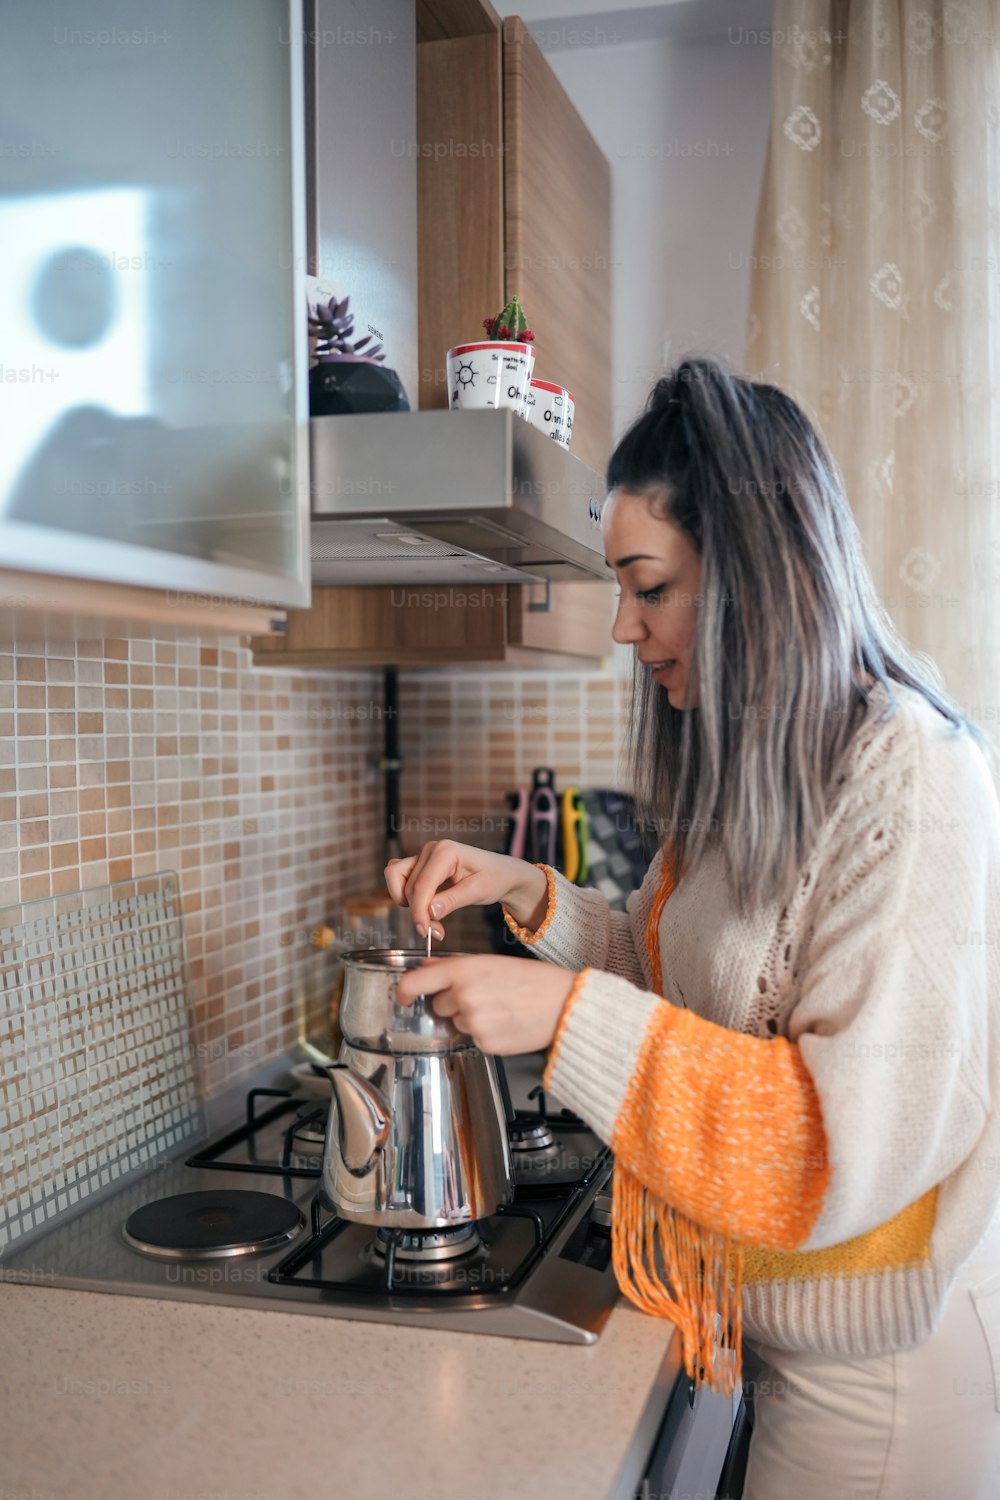 Une femme debout dans une cuisine en train de préparer de la nourriture